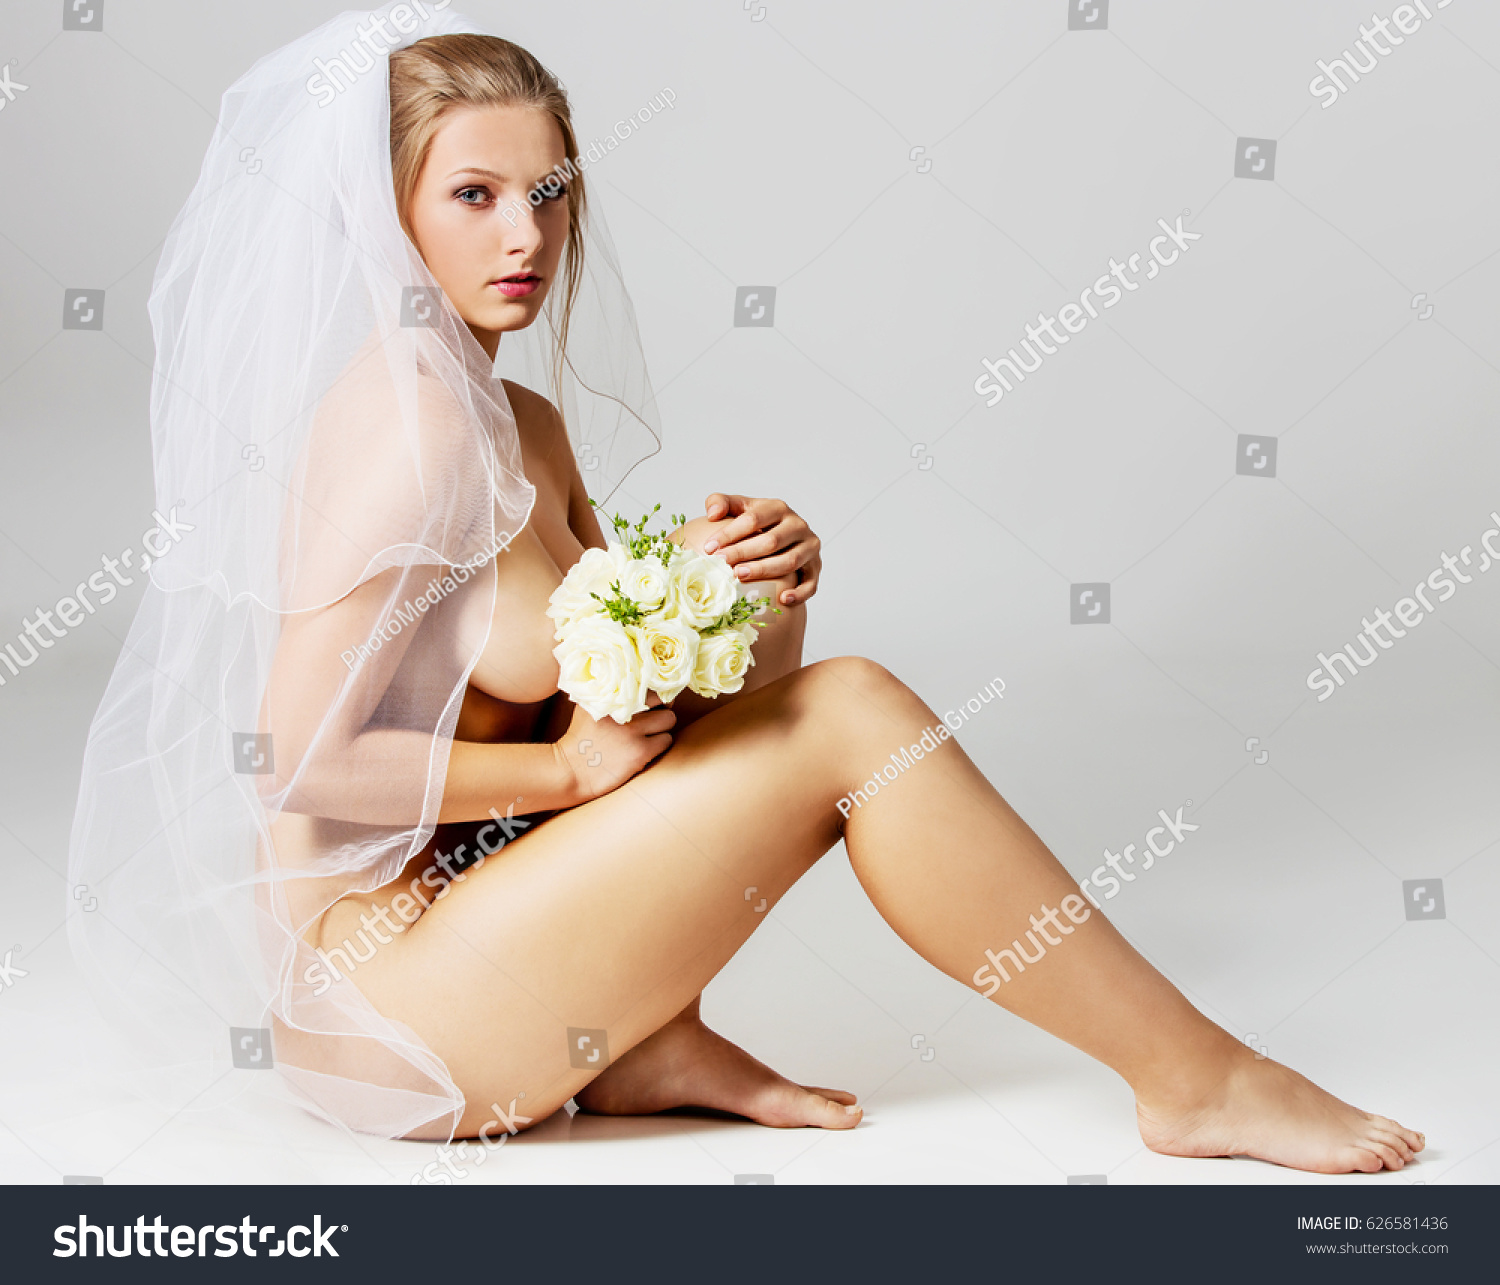 Nude Bride Pics